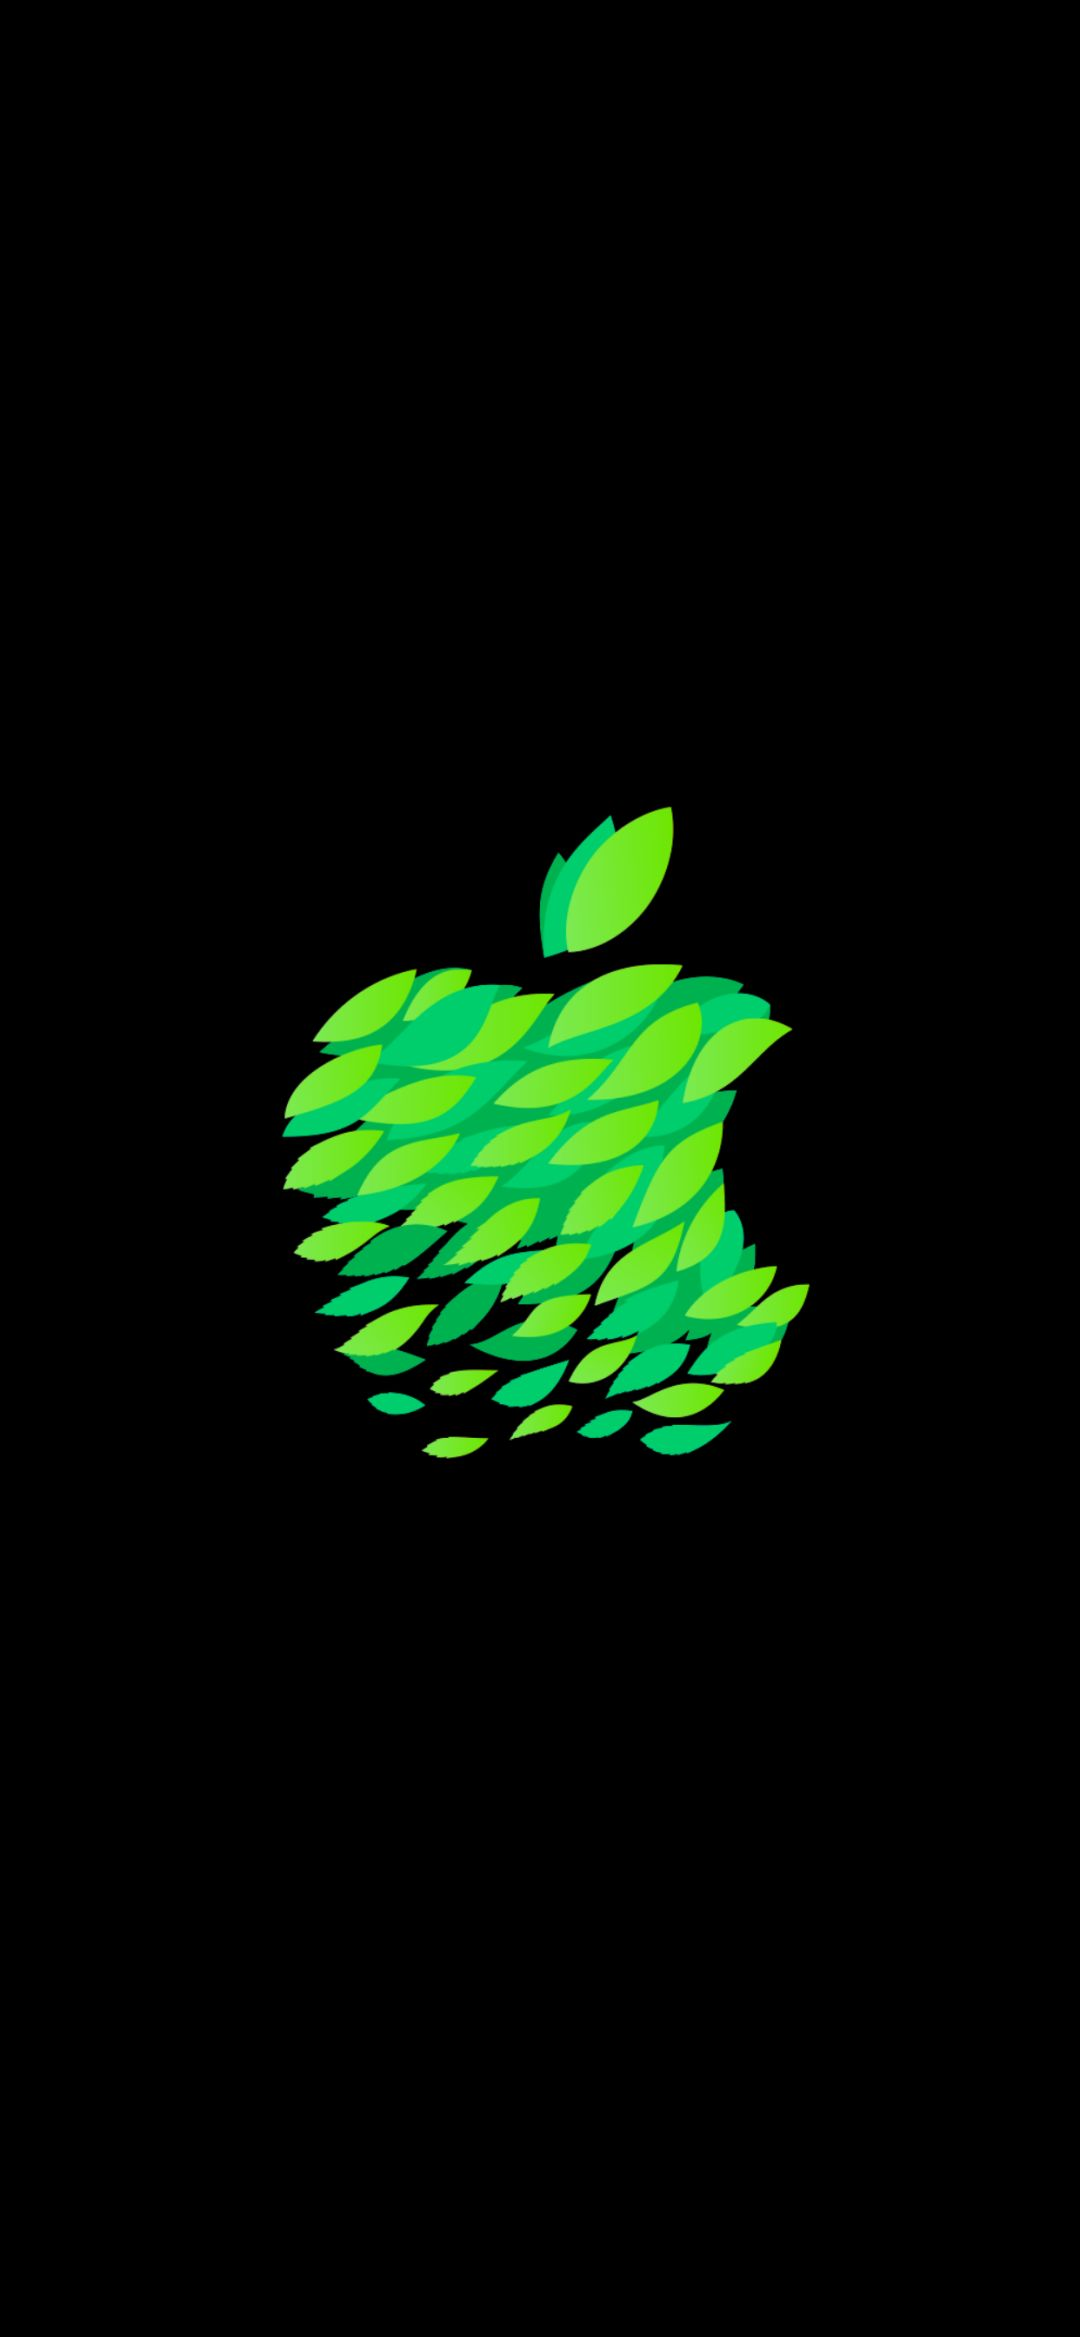 苹果logo原图_壁纸 | 新苹果 LOGO 壁纸 (https://mushiming.com/)  第4张